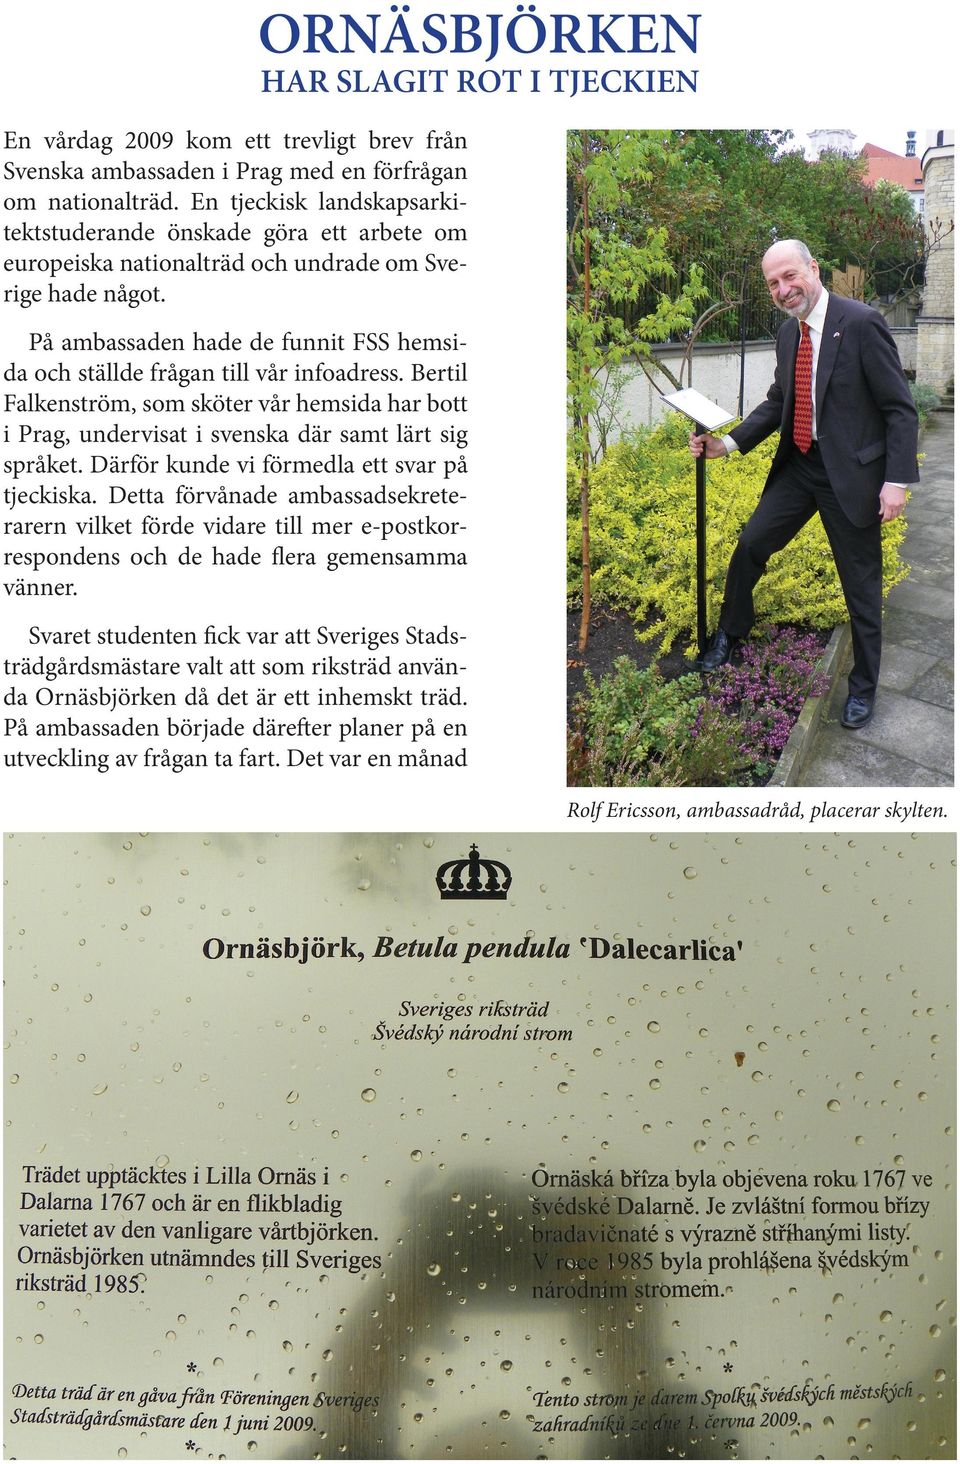 På ambassaden hade de funnit FSS hemsida och ställde frågan till vår infoadress. Bertil Falkenström, som sköter vår hemsida har bott i Prag, undervisat i svenska där samt lärt sig språket.